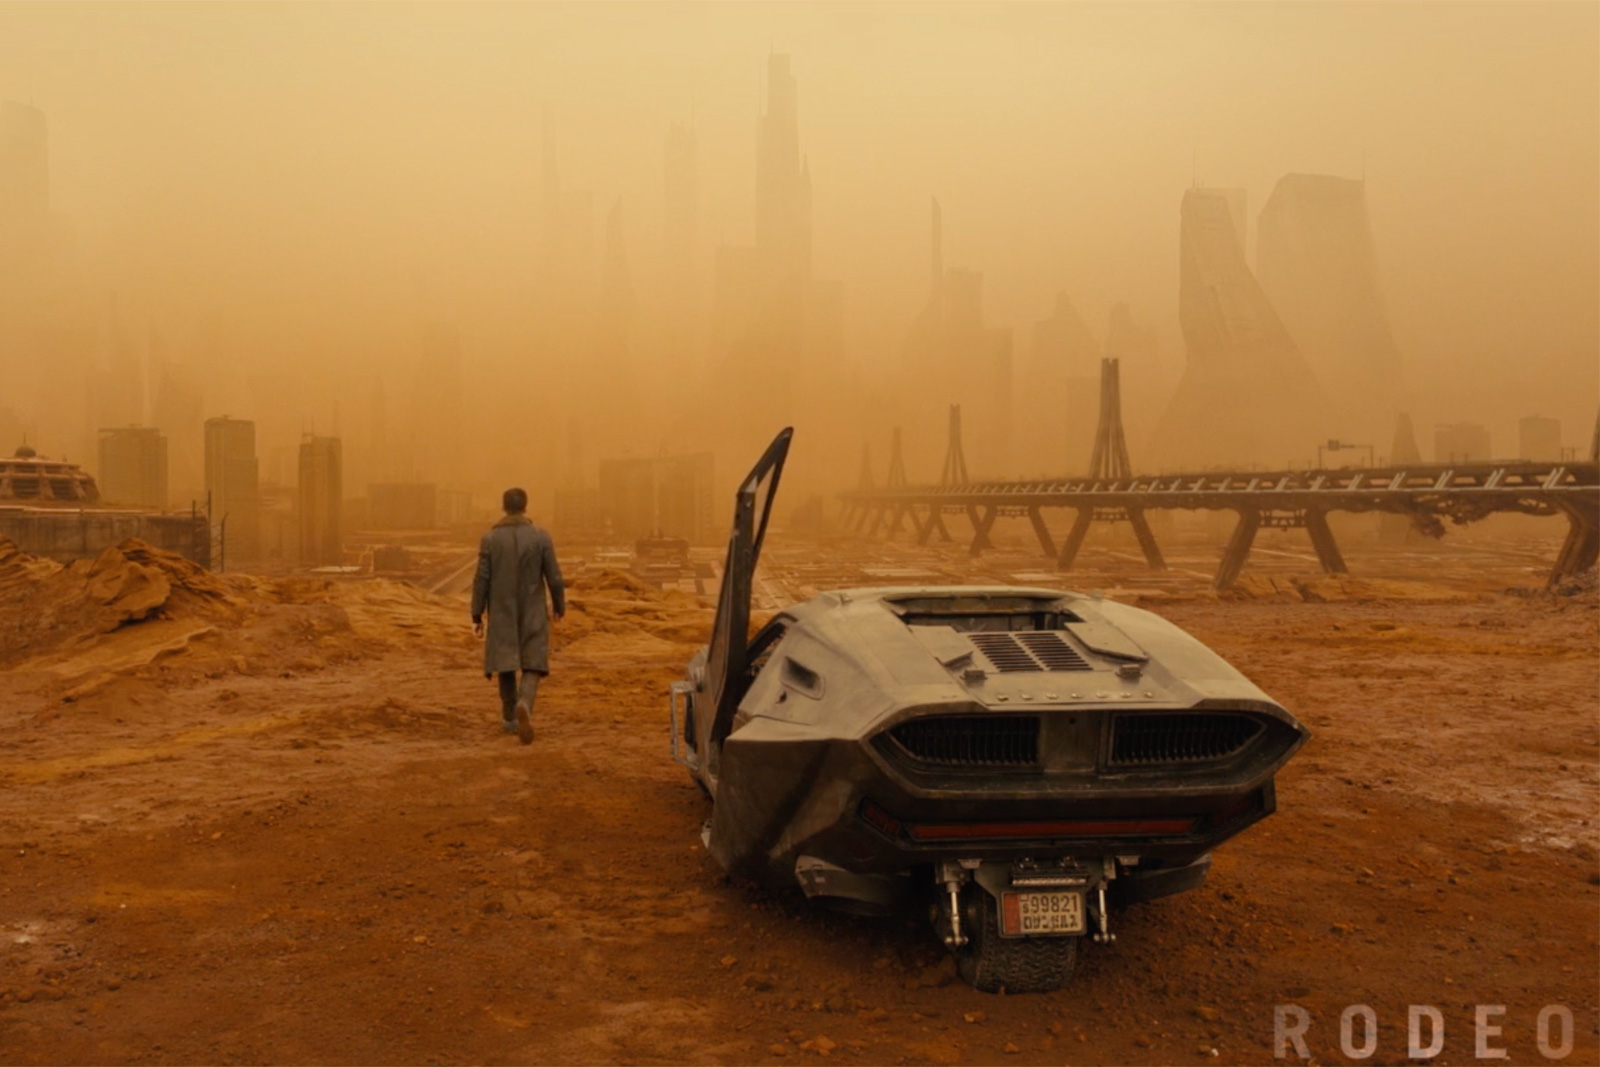 Blade Runner 2049 görsel efektleri nasıl hazırlandı?